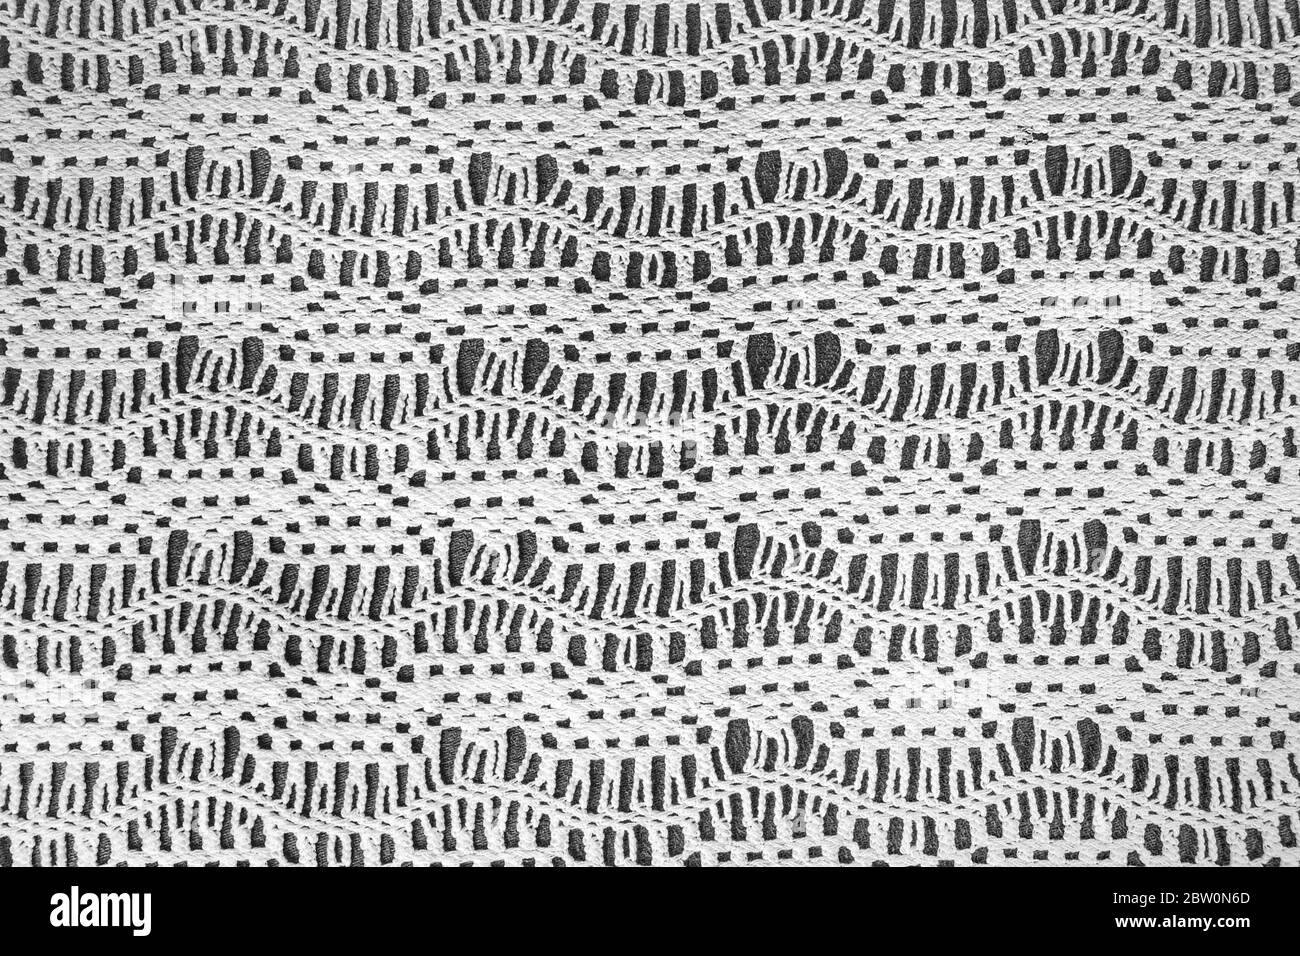 motif zigzag en dentelle au crochet à l'ancienne sur fond gris foncé Banque D'Images